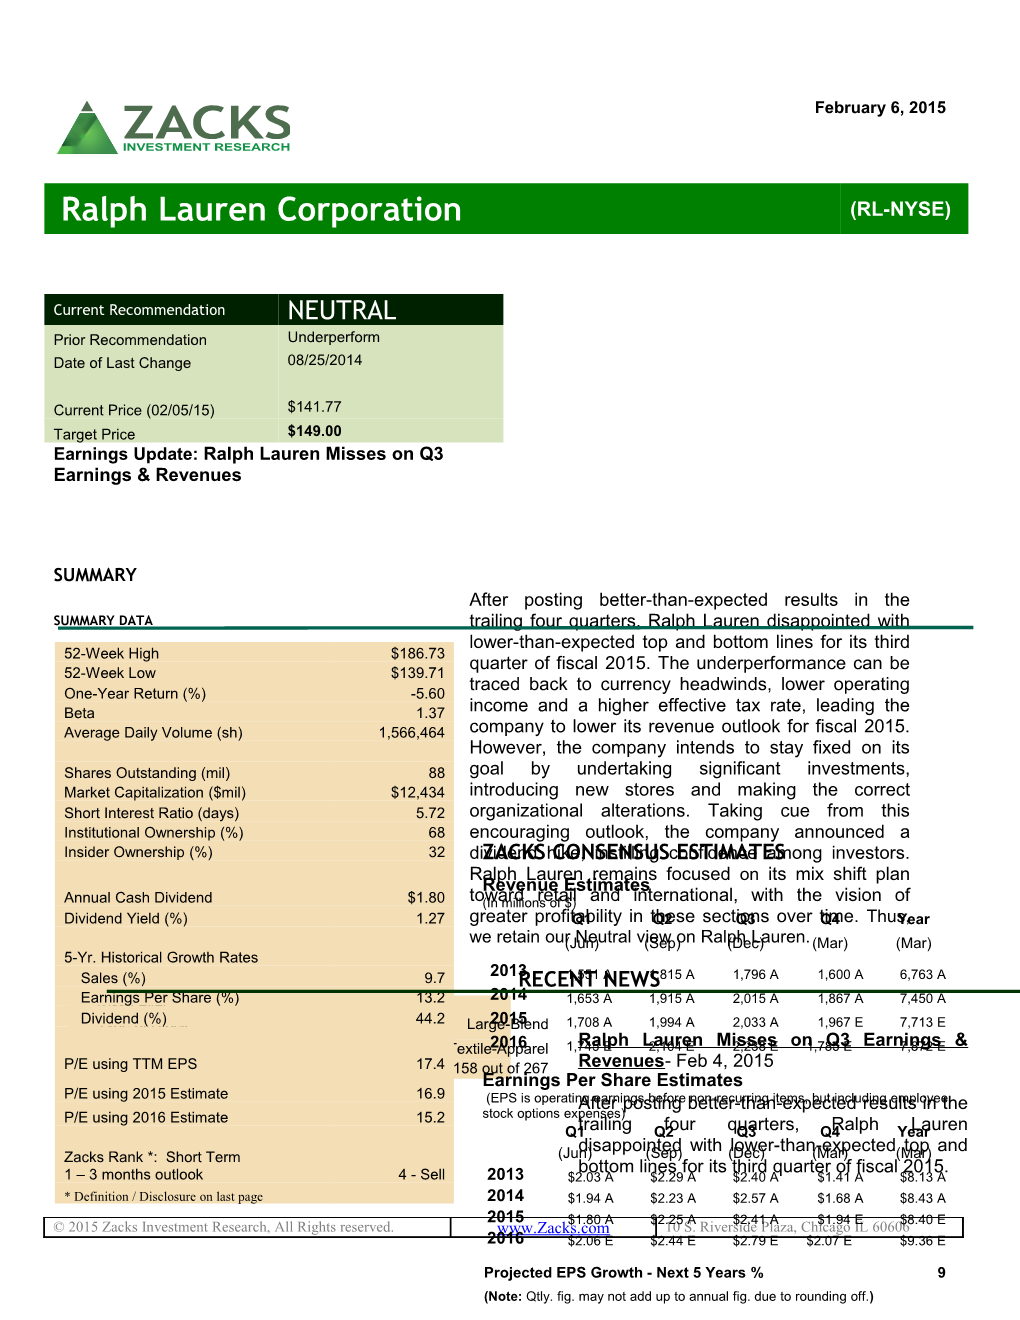 Earnings Update: Ralph Lauren Misses on Q3 Earnings & Revenues